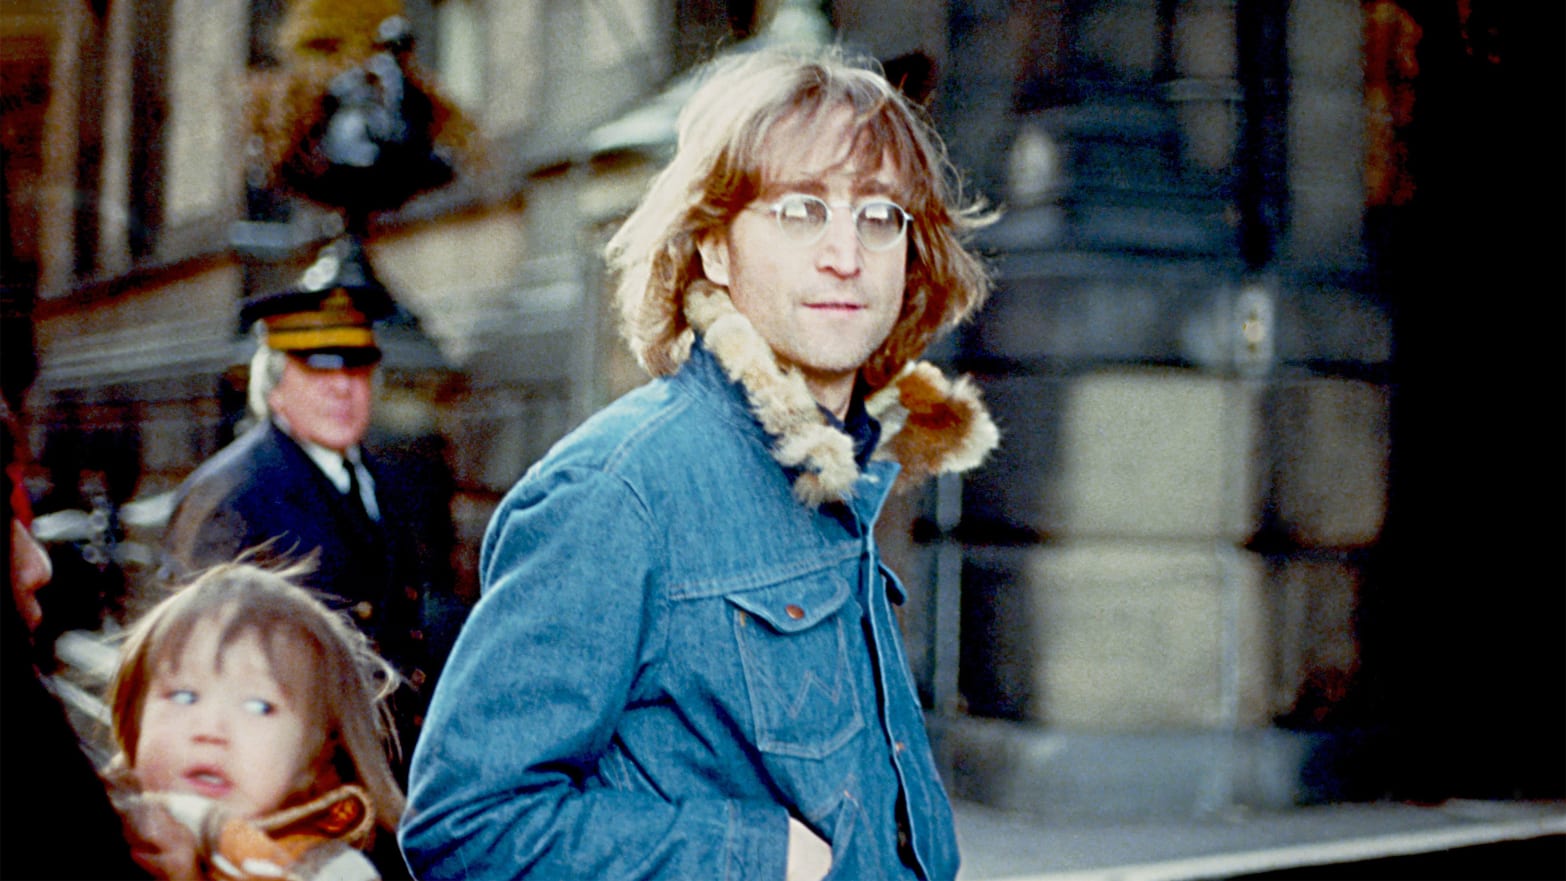 Former Beatle John Lennon in 1977 in New York City.